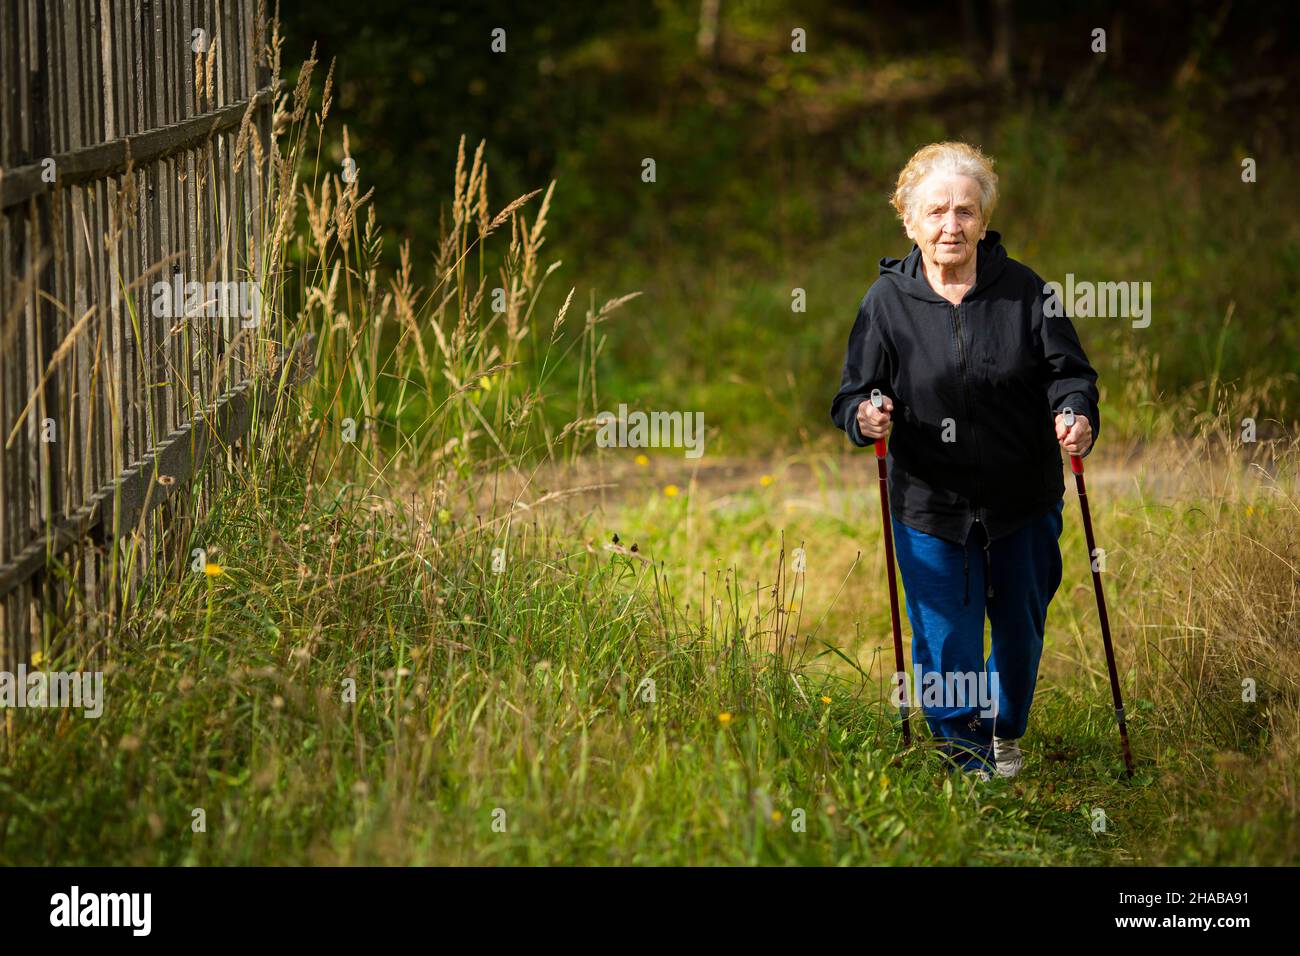 Une femme âgée marche avec des bâtons, pratiquant la marche nordique dans la campagne. Banque D'Images